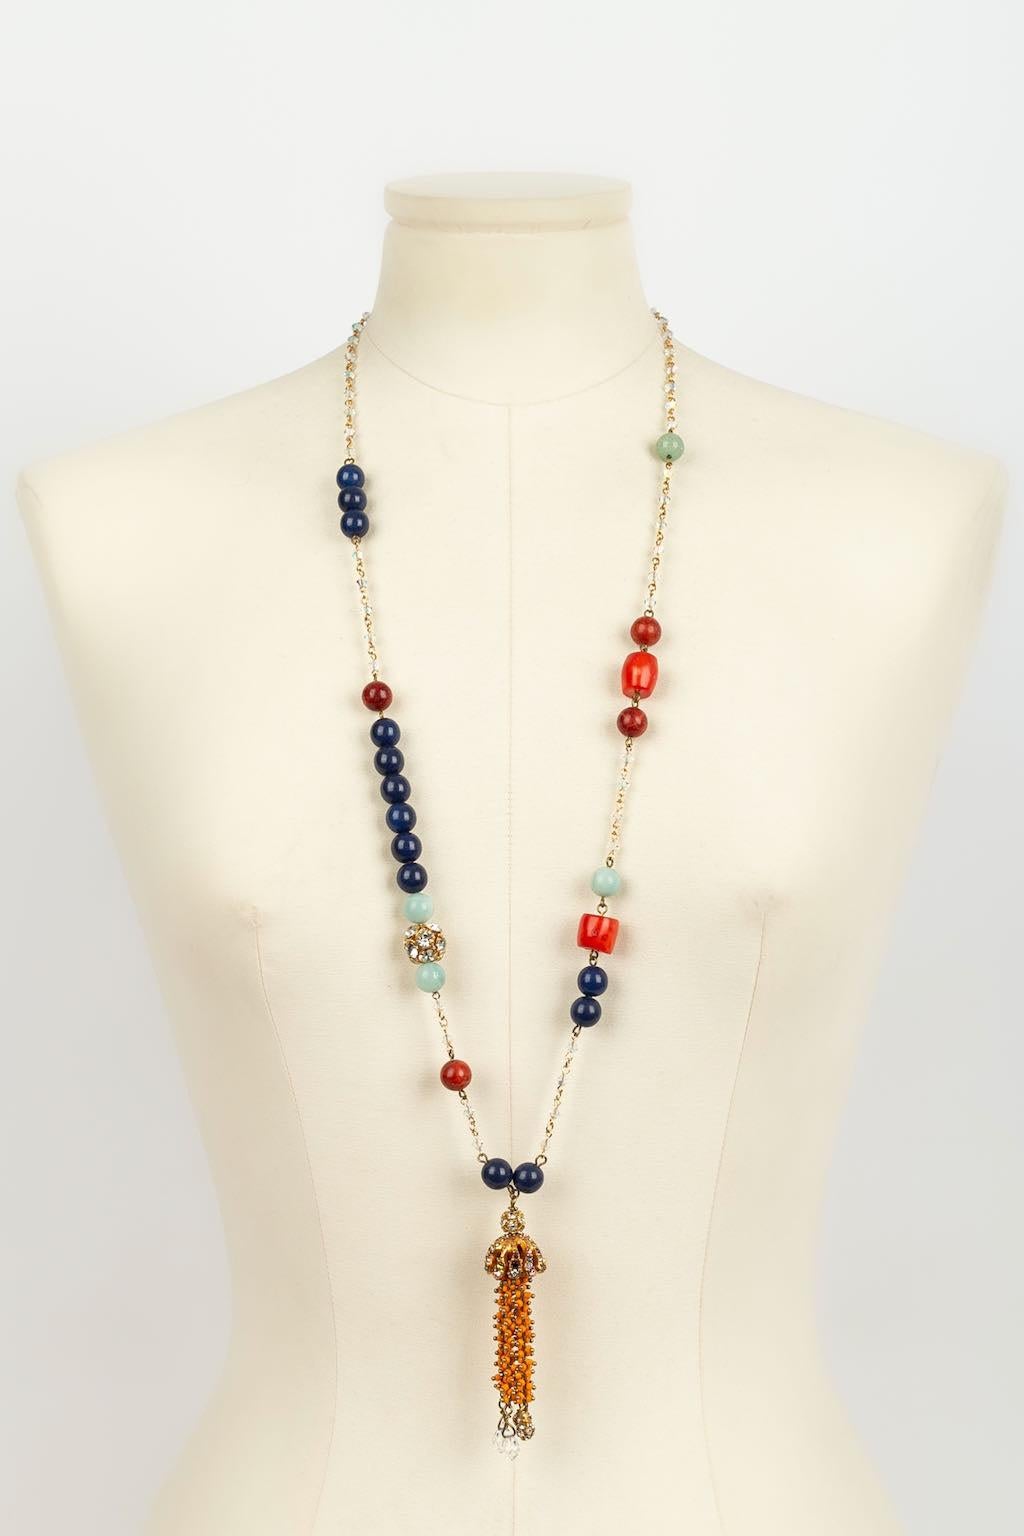 Christian Lacroix -Lange Halskette mit mehrfarbigen Perlen und goldenem Metallpompon, der mit Strasssteinen und orangefarbenen Perlen besetzt ist.

Zusätzliche Informationen: 
Abmessungen: Länge: 88,5 cm
Zustand: Sehr guter